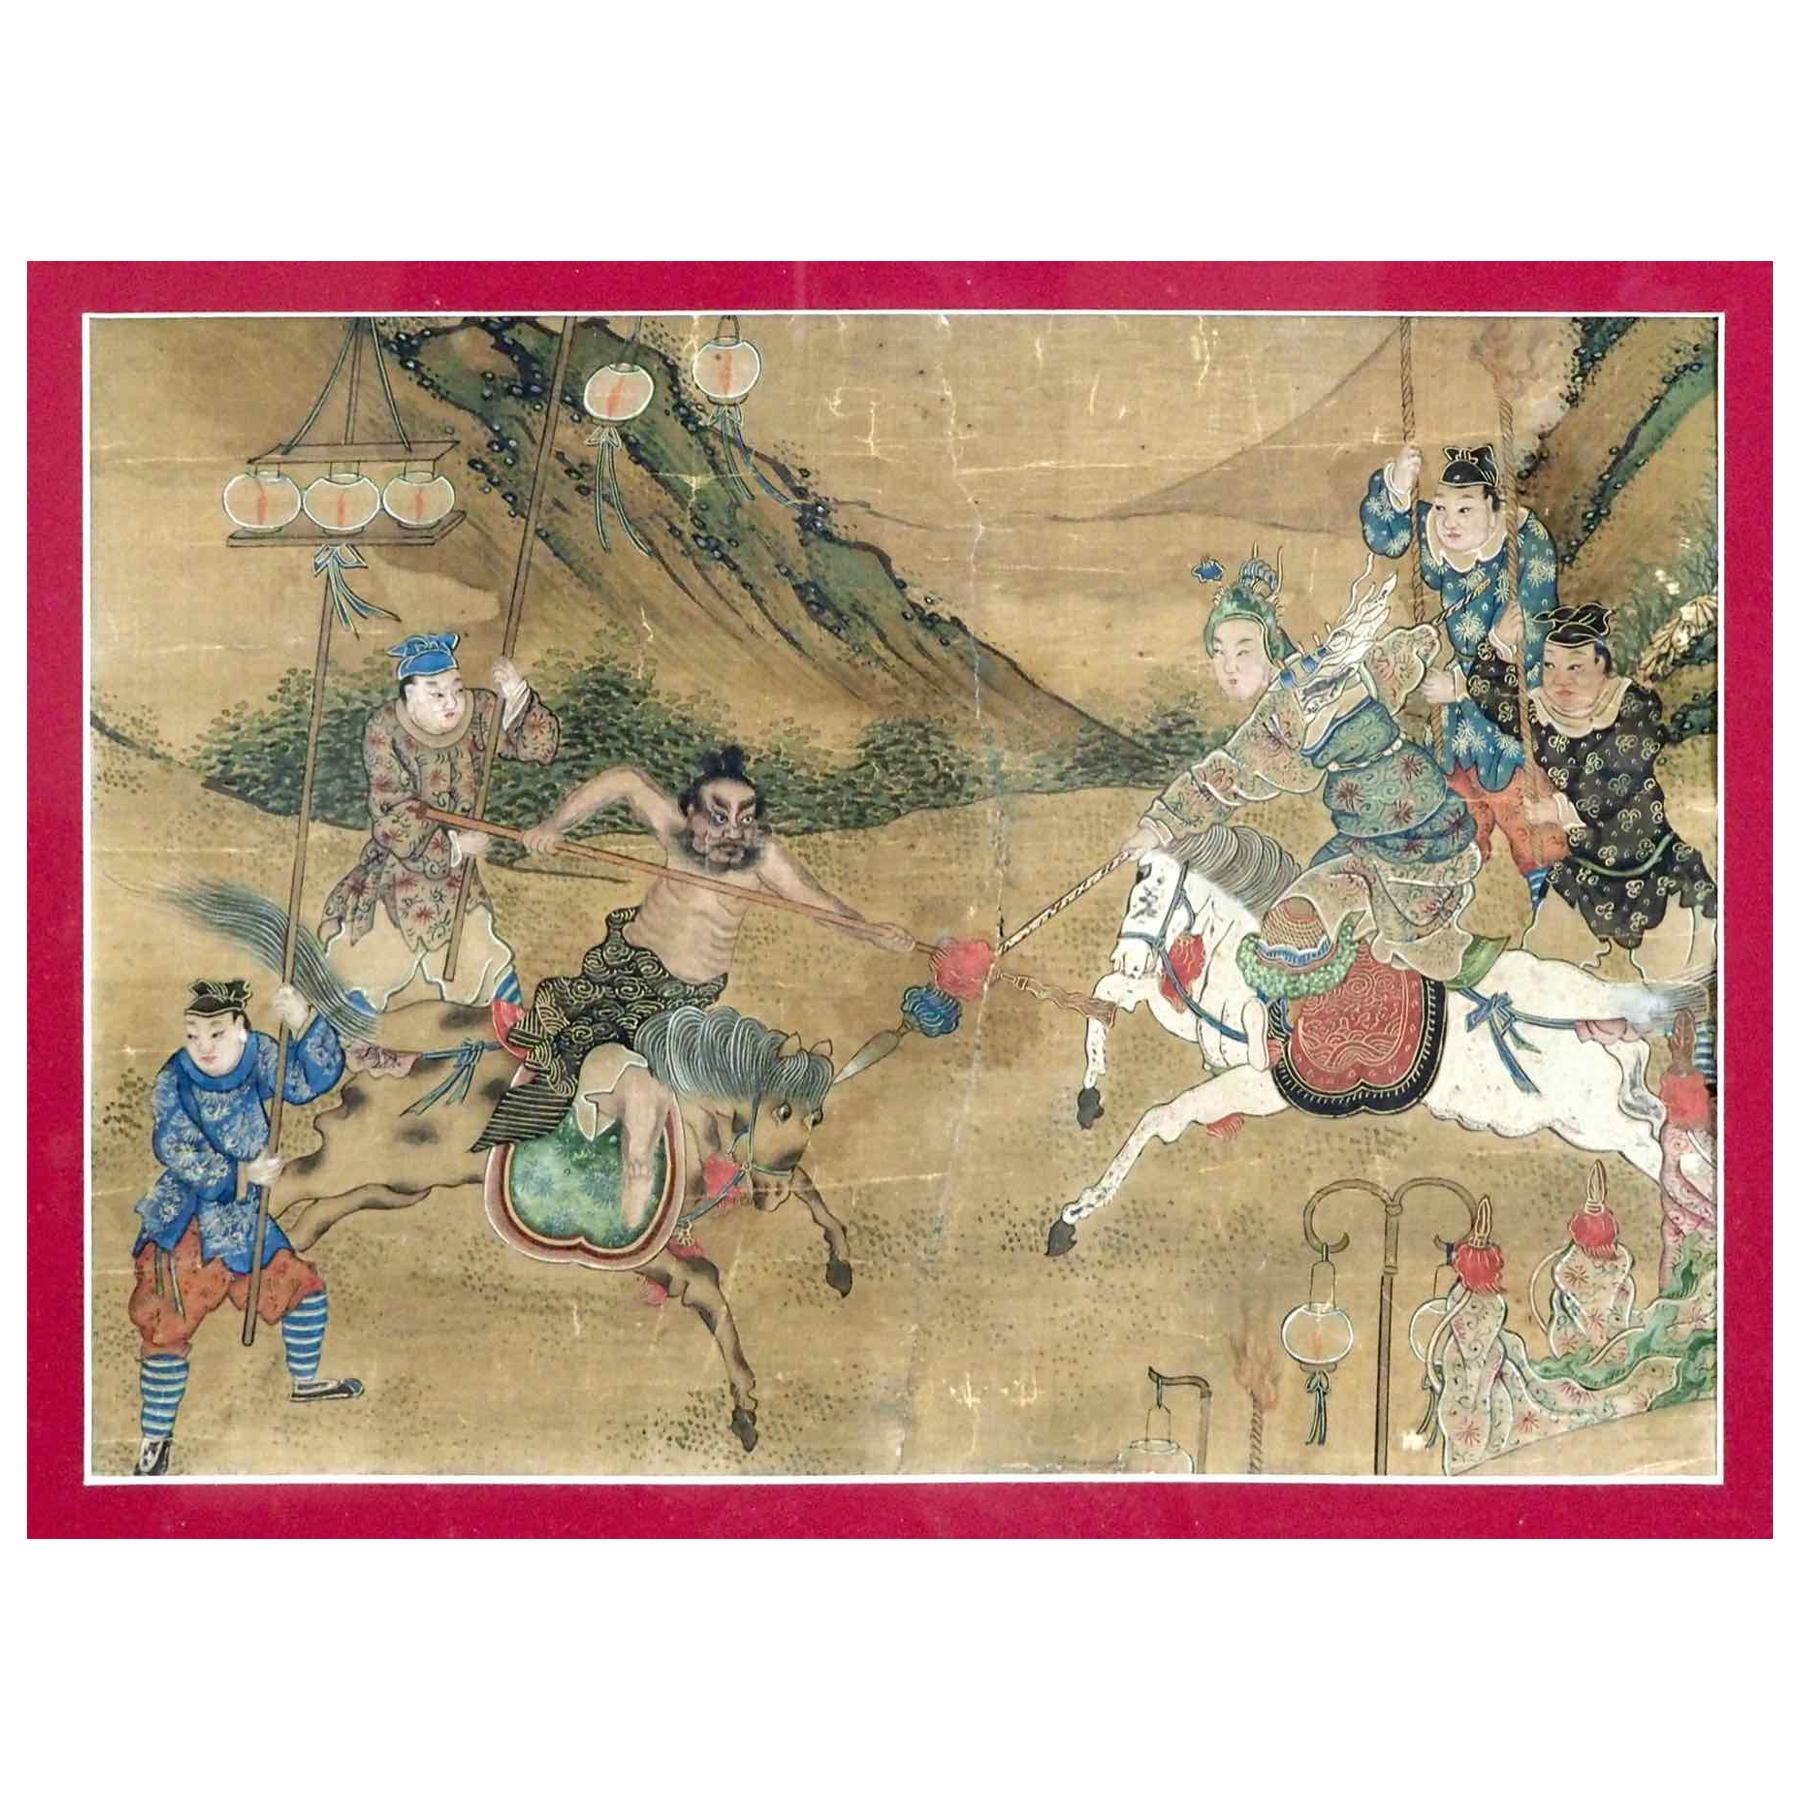 Beautiful Chinese Painting, 18th Century